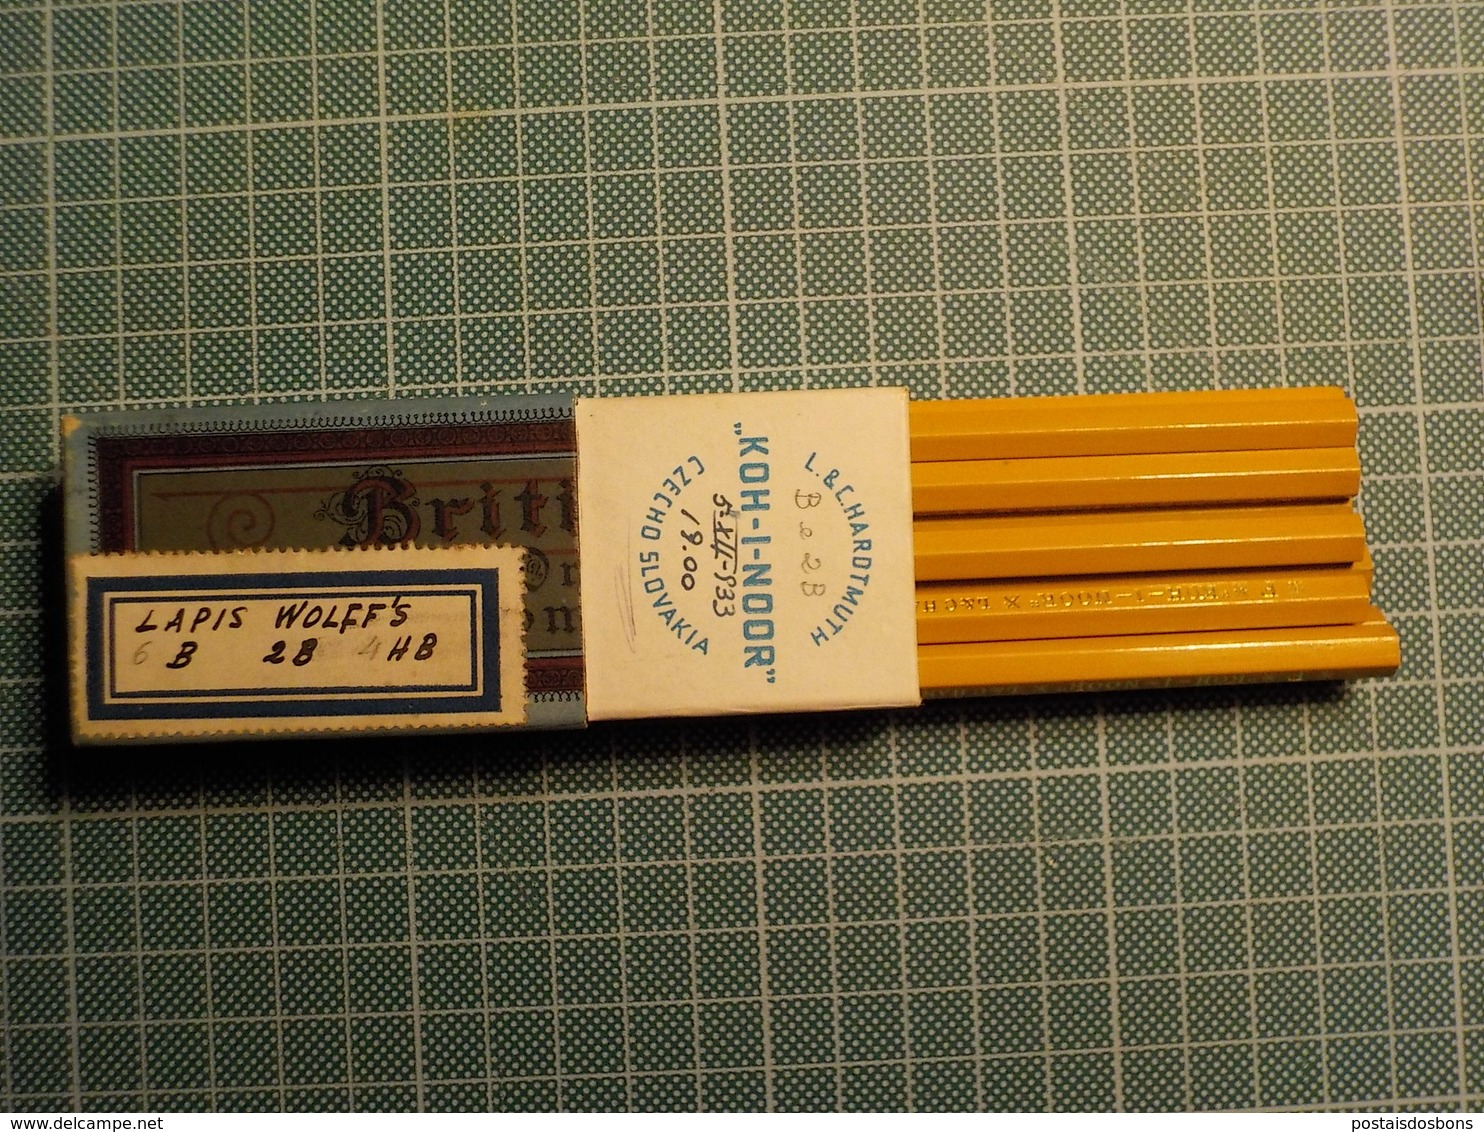 Cx 12) Czech pencil box crayon KOH-I-NOOR L & C HARDTMUTH 1933 10 pencils